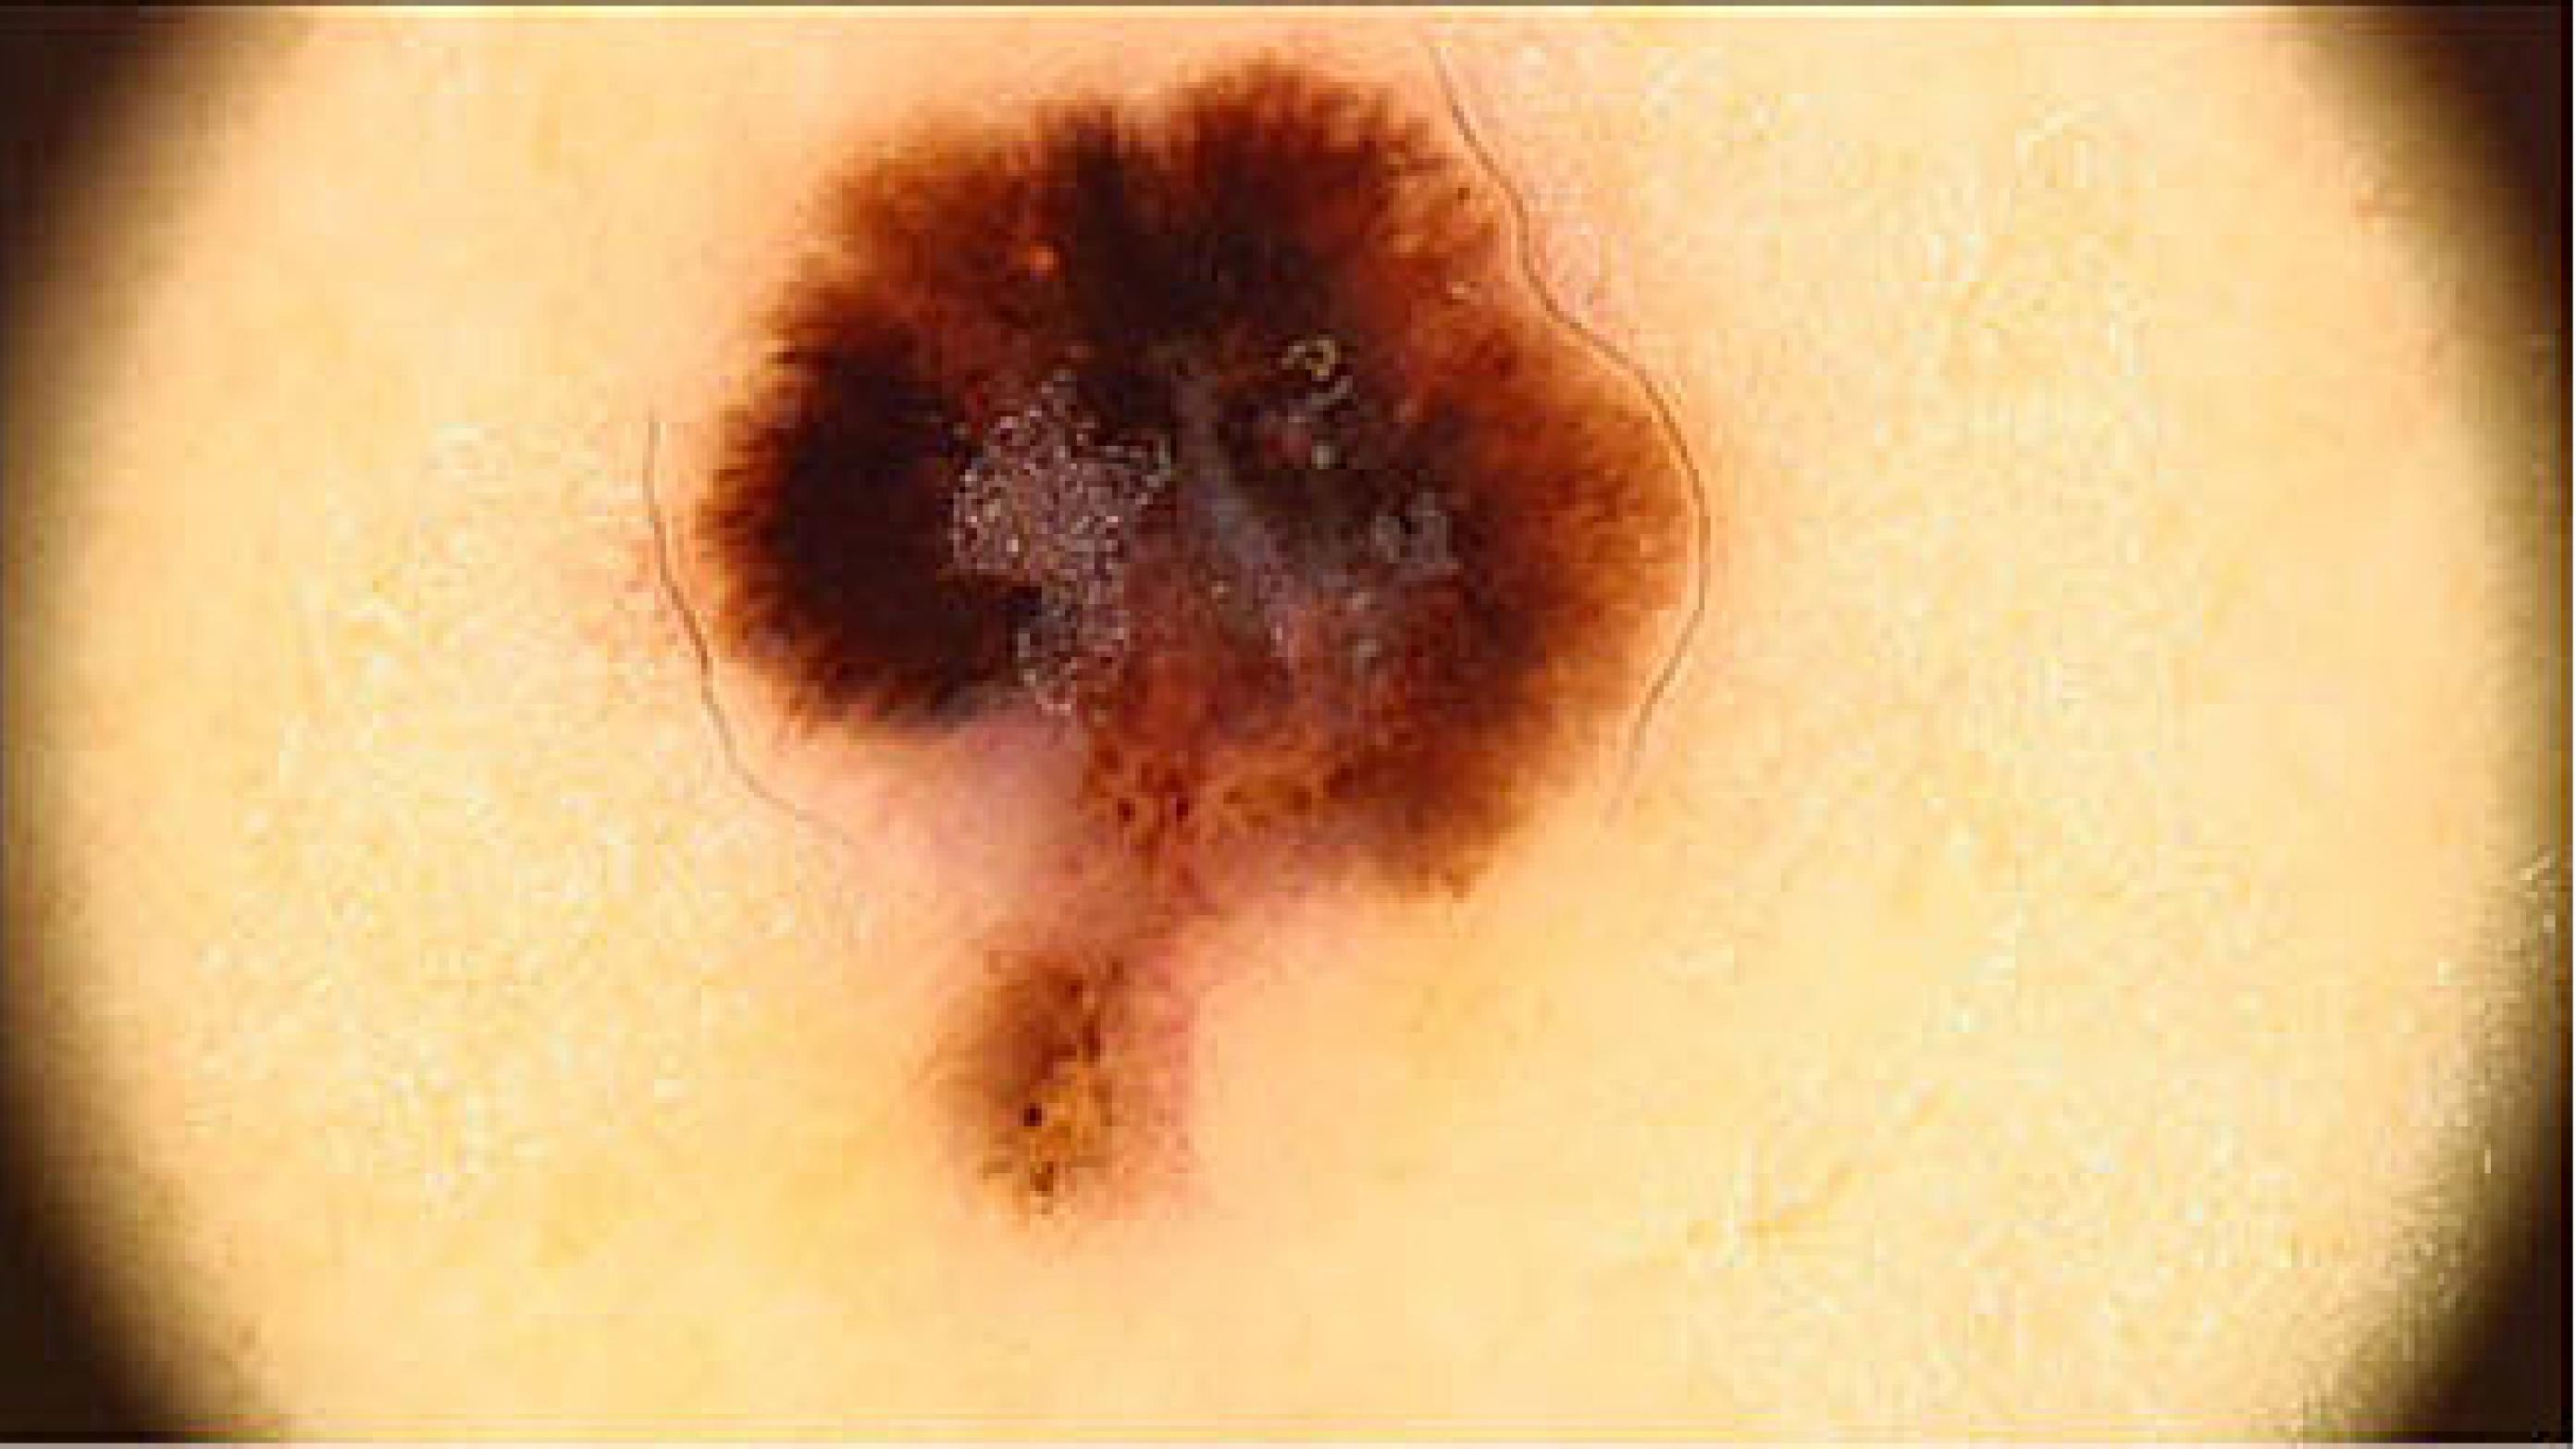 Malignt melanom. (Foto: Georg Authried, Dermatologisk Afdeling, Odense Universitetshospital).